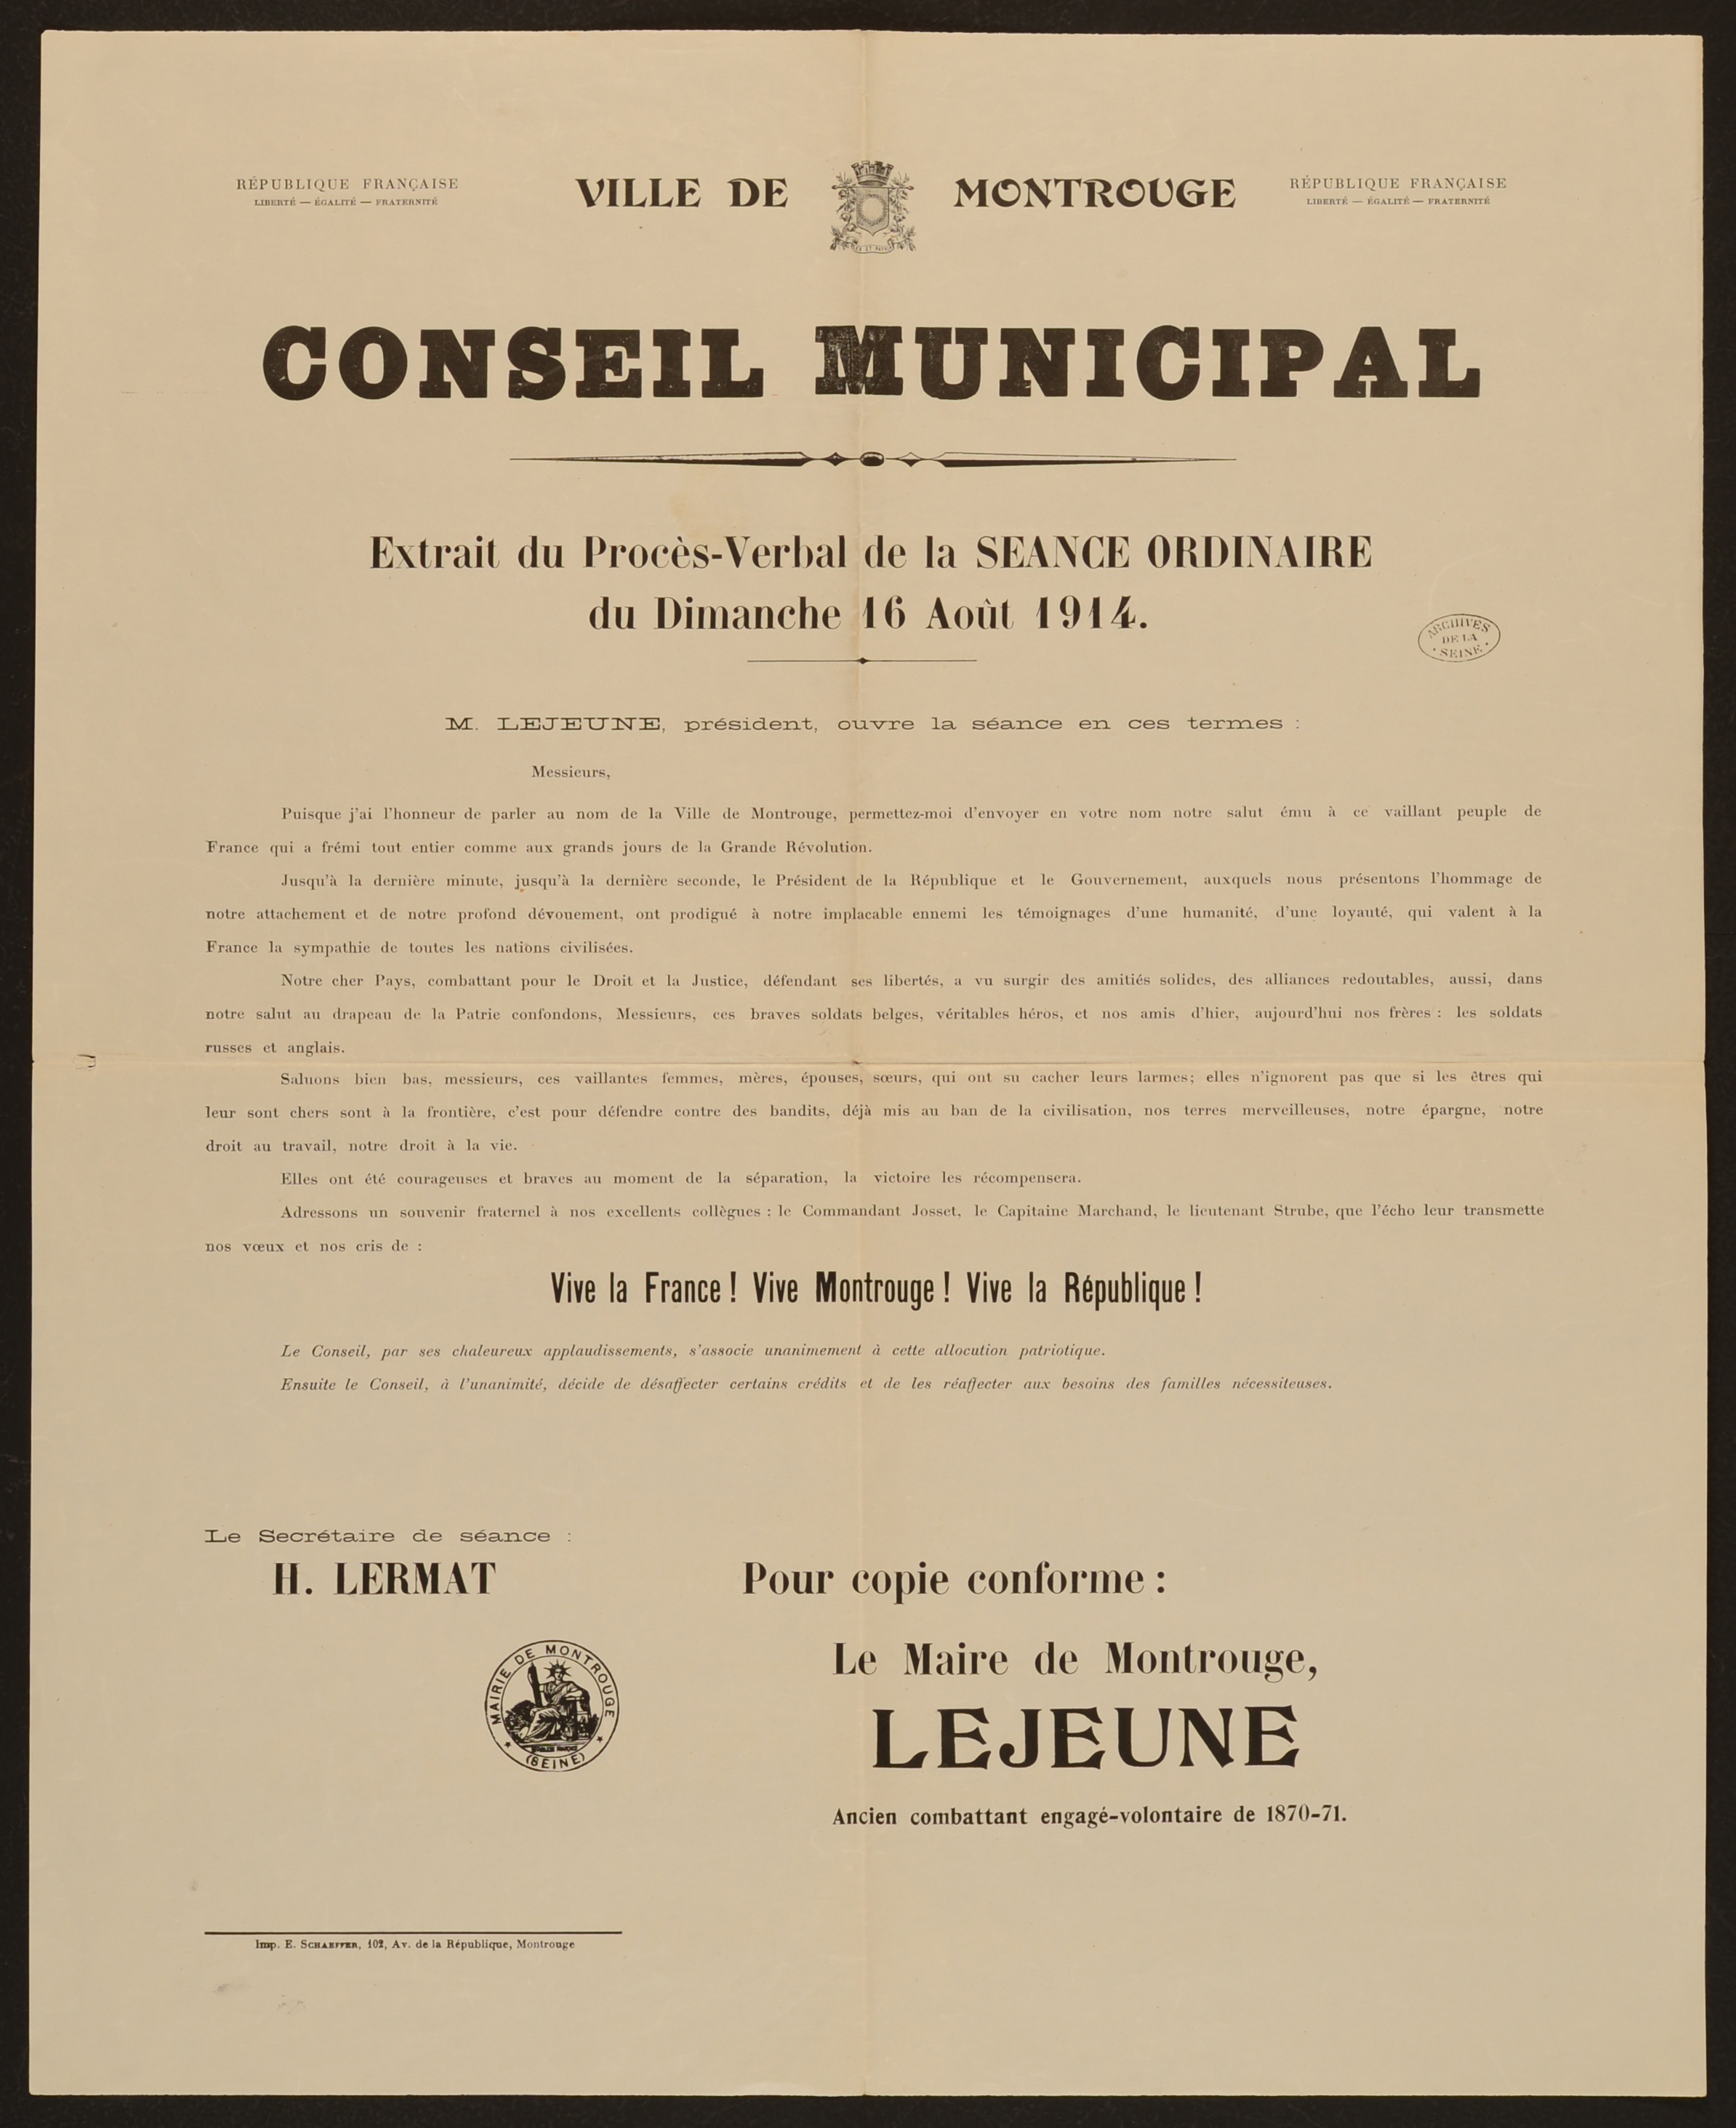 affiche : Extrait procés-verbal conseil municipal du 16 août 1914